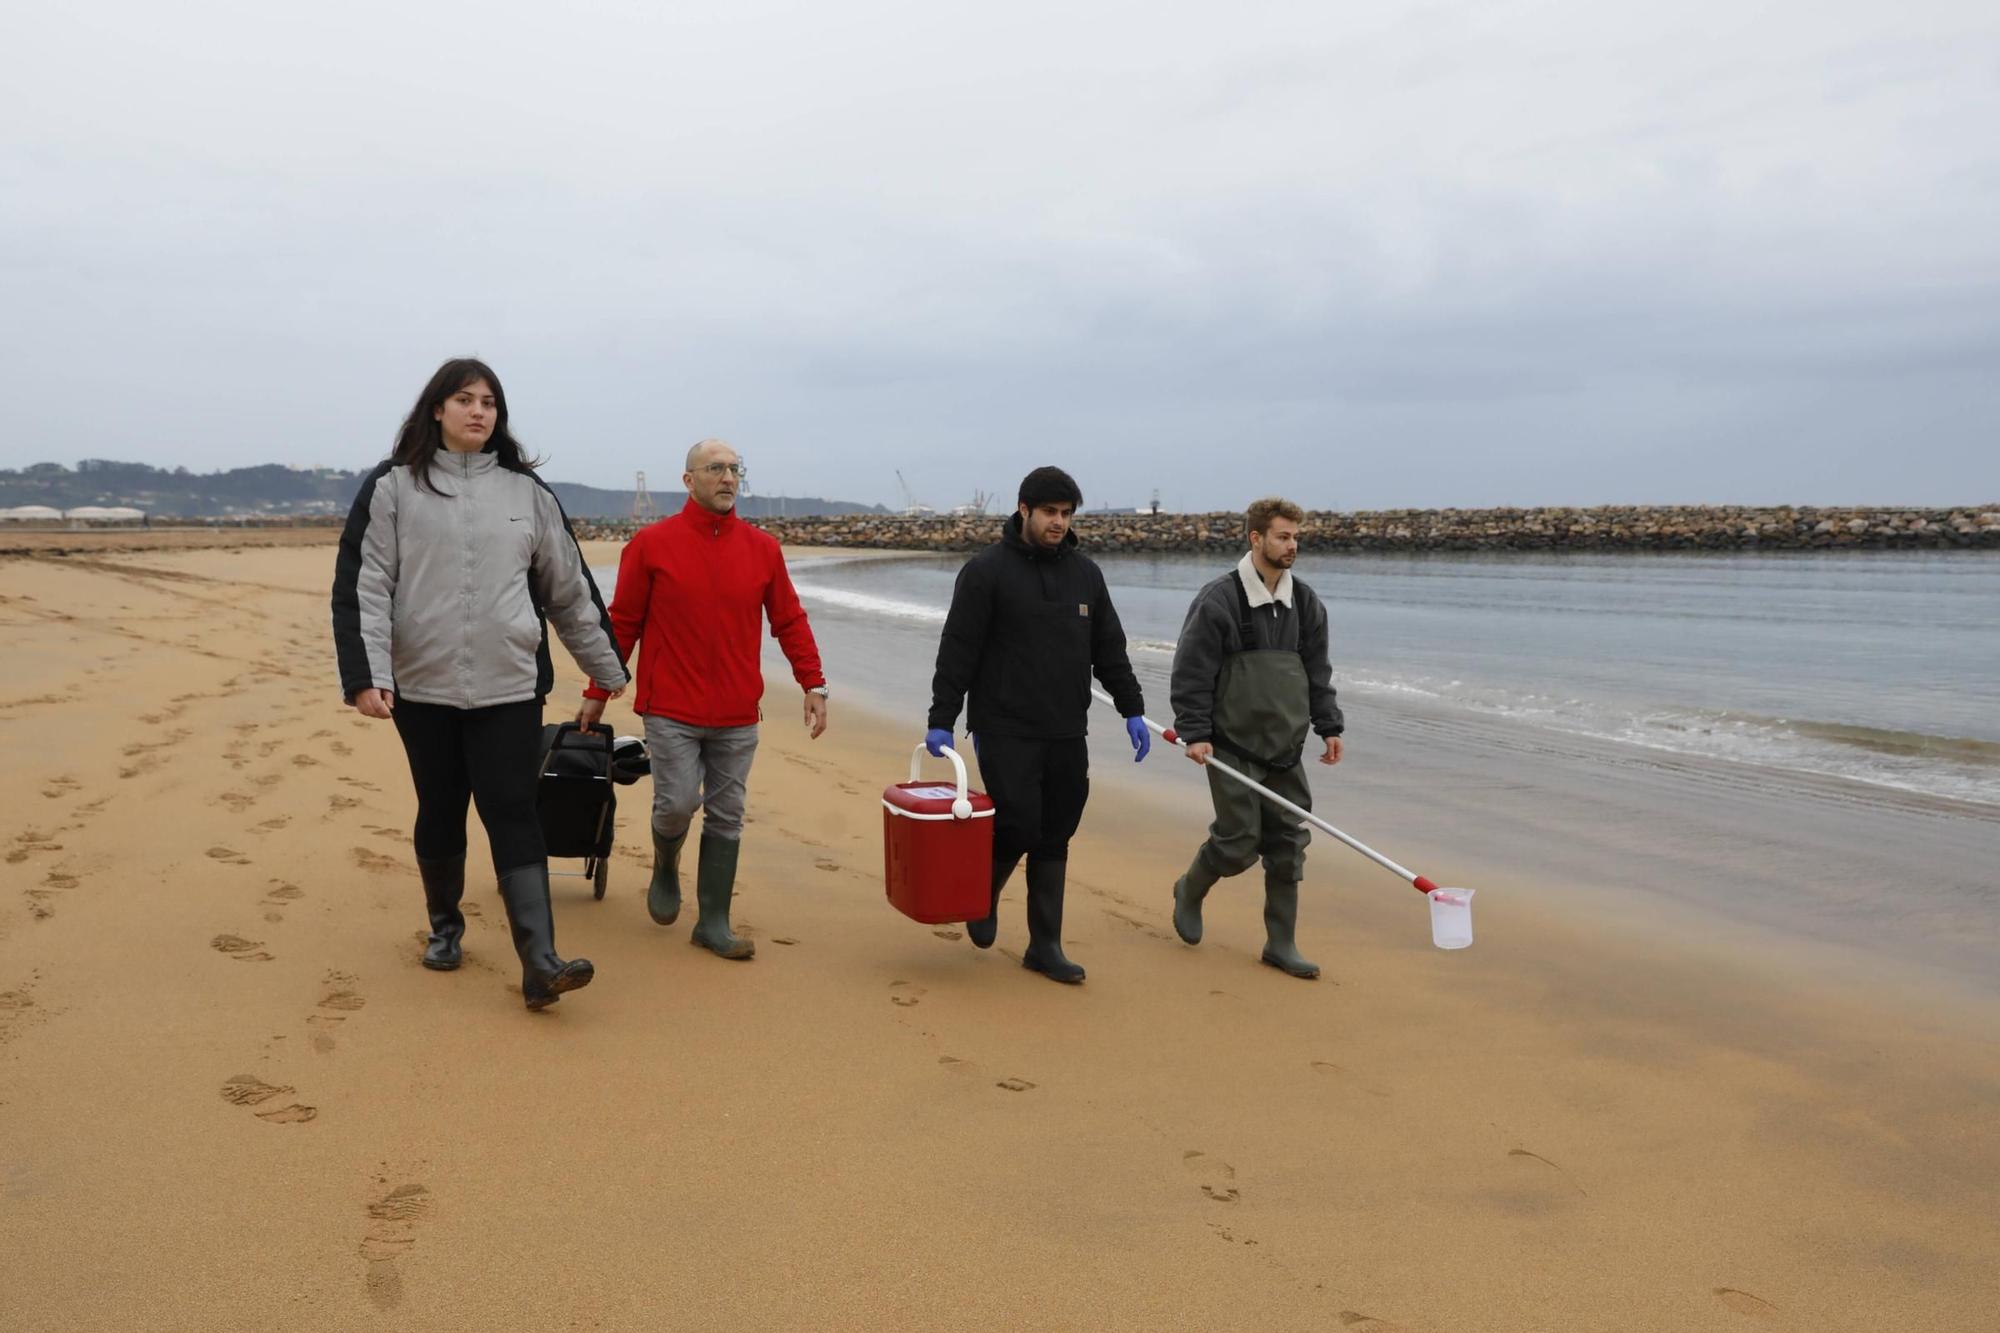 Estudiantes del IES Nº 1 controlan la calidad ambiental de las playas de la mano del Oceanográfico (en imágenes)